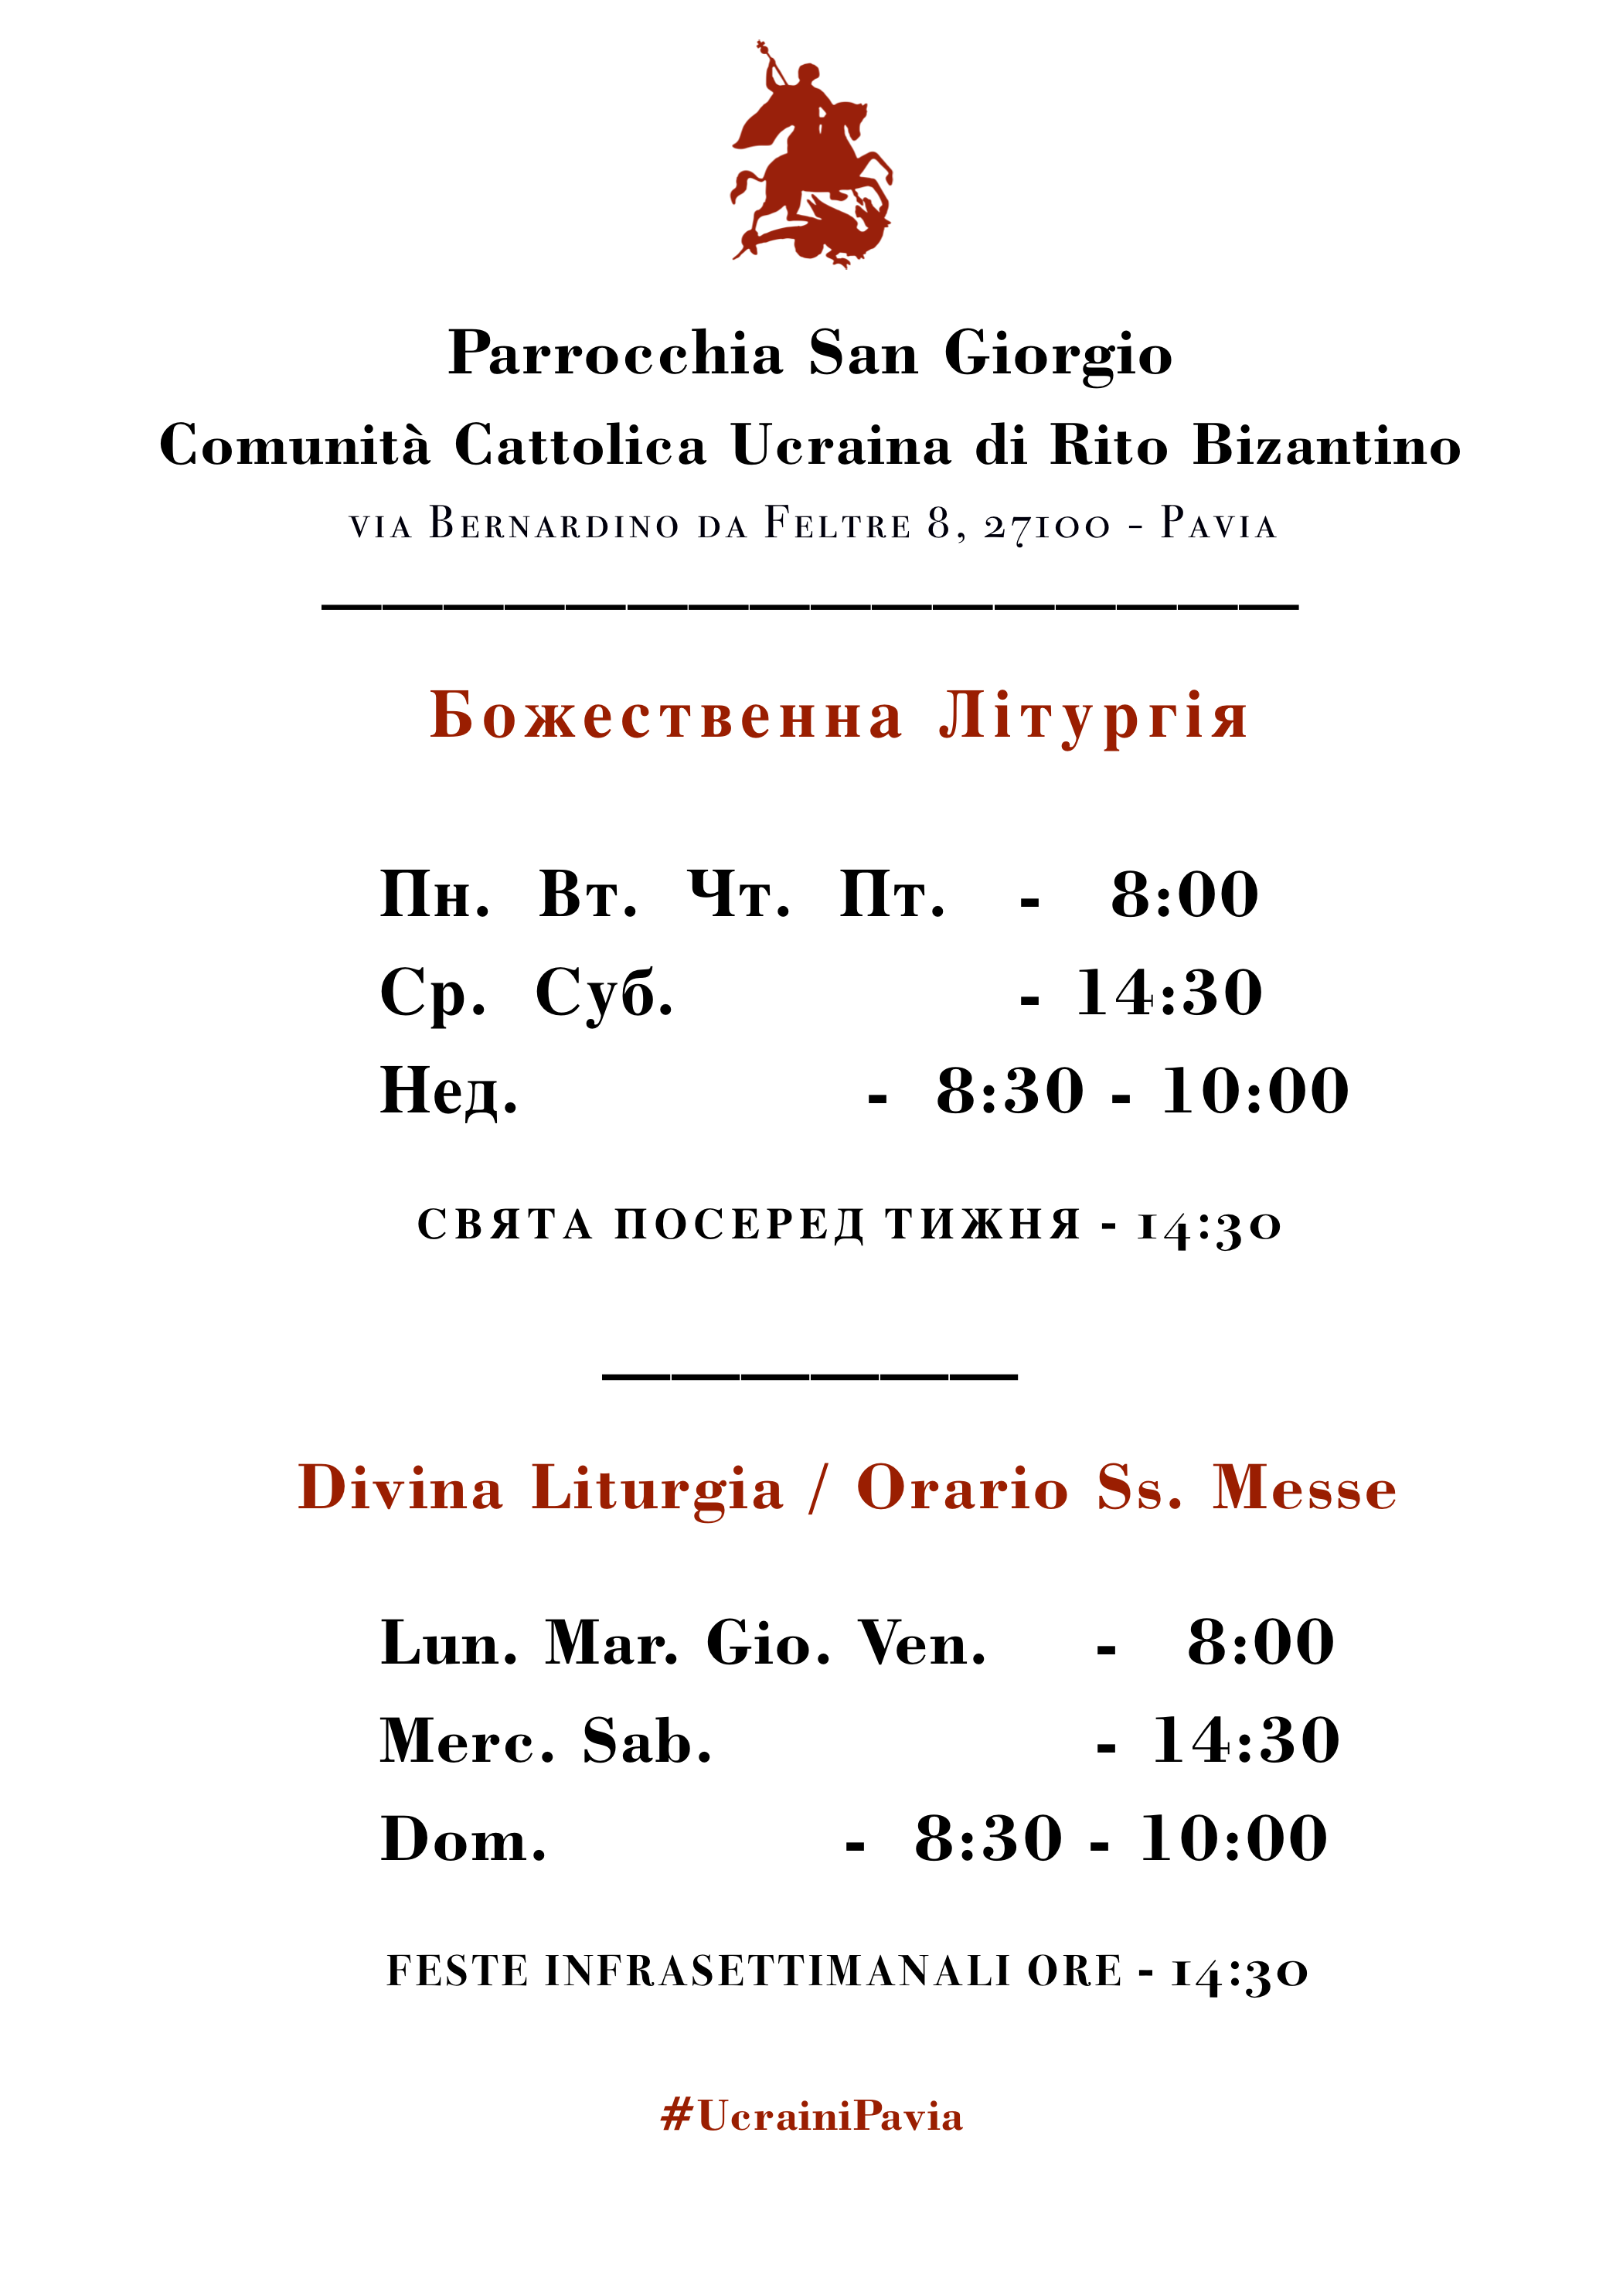 Divina Liturgia Orario Ss. Messe